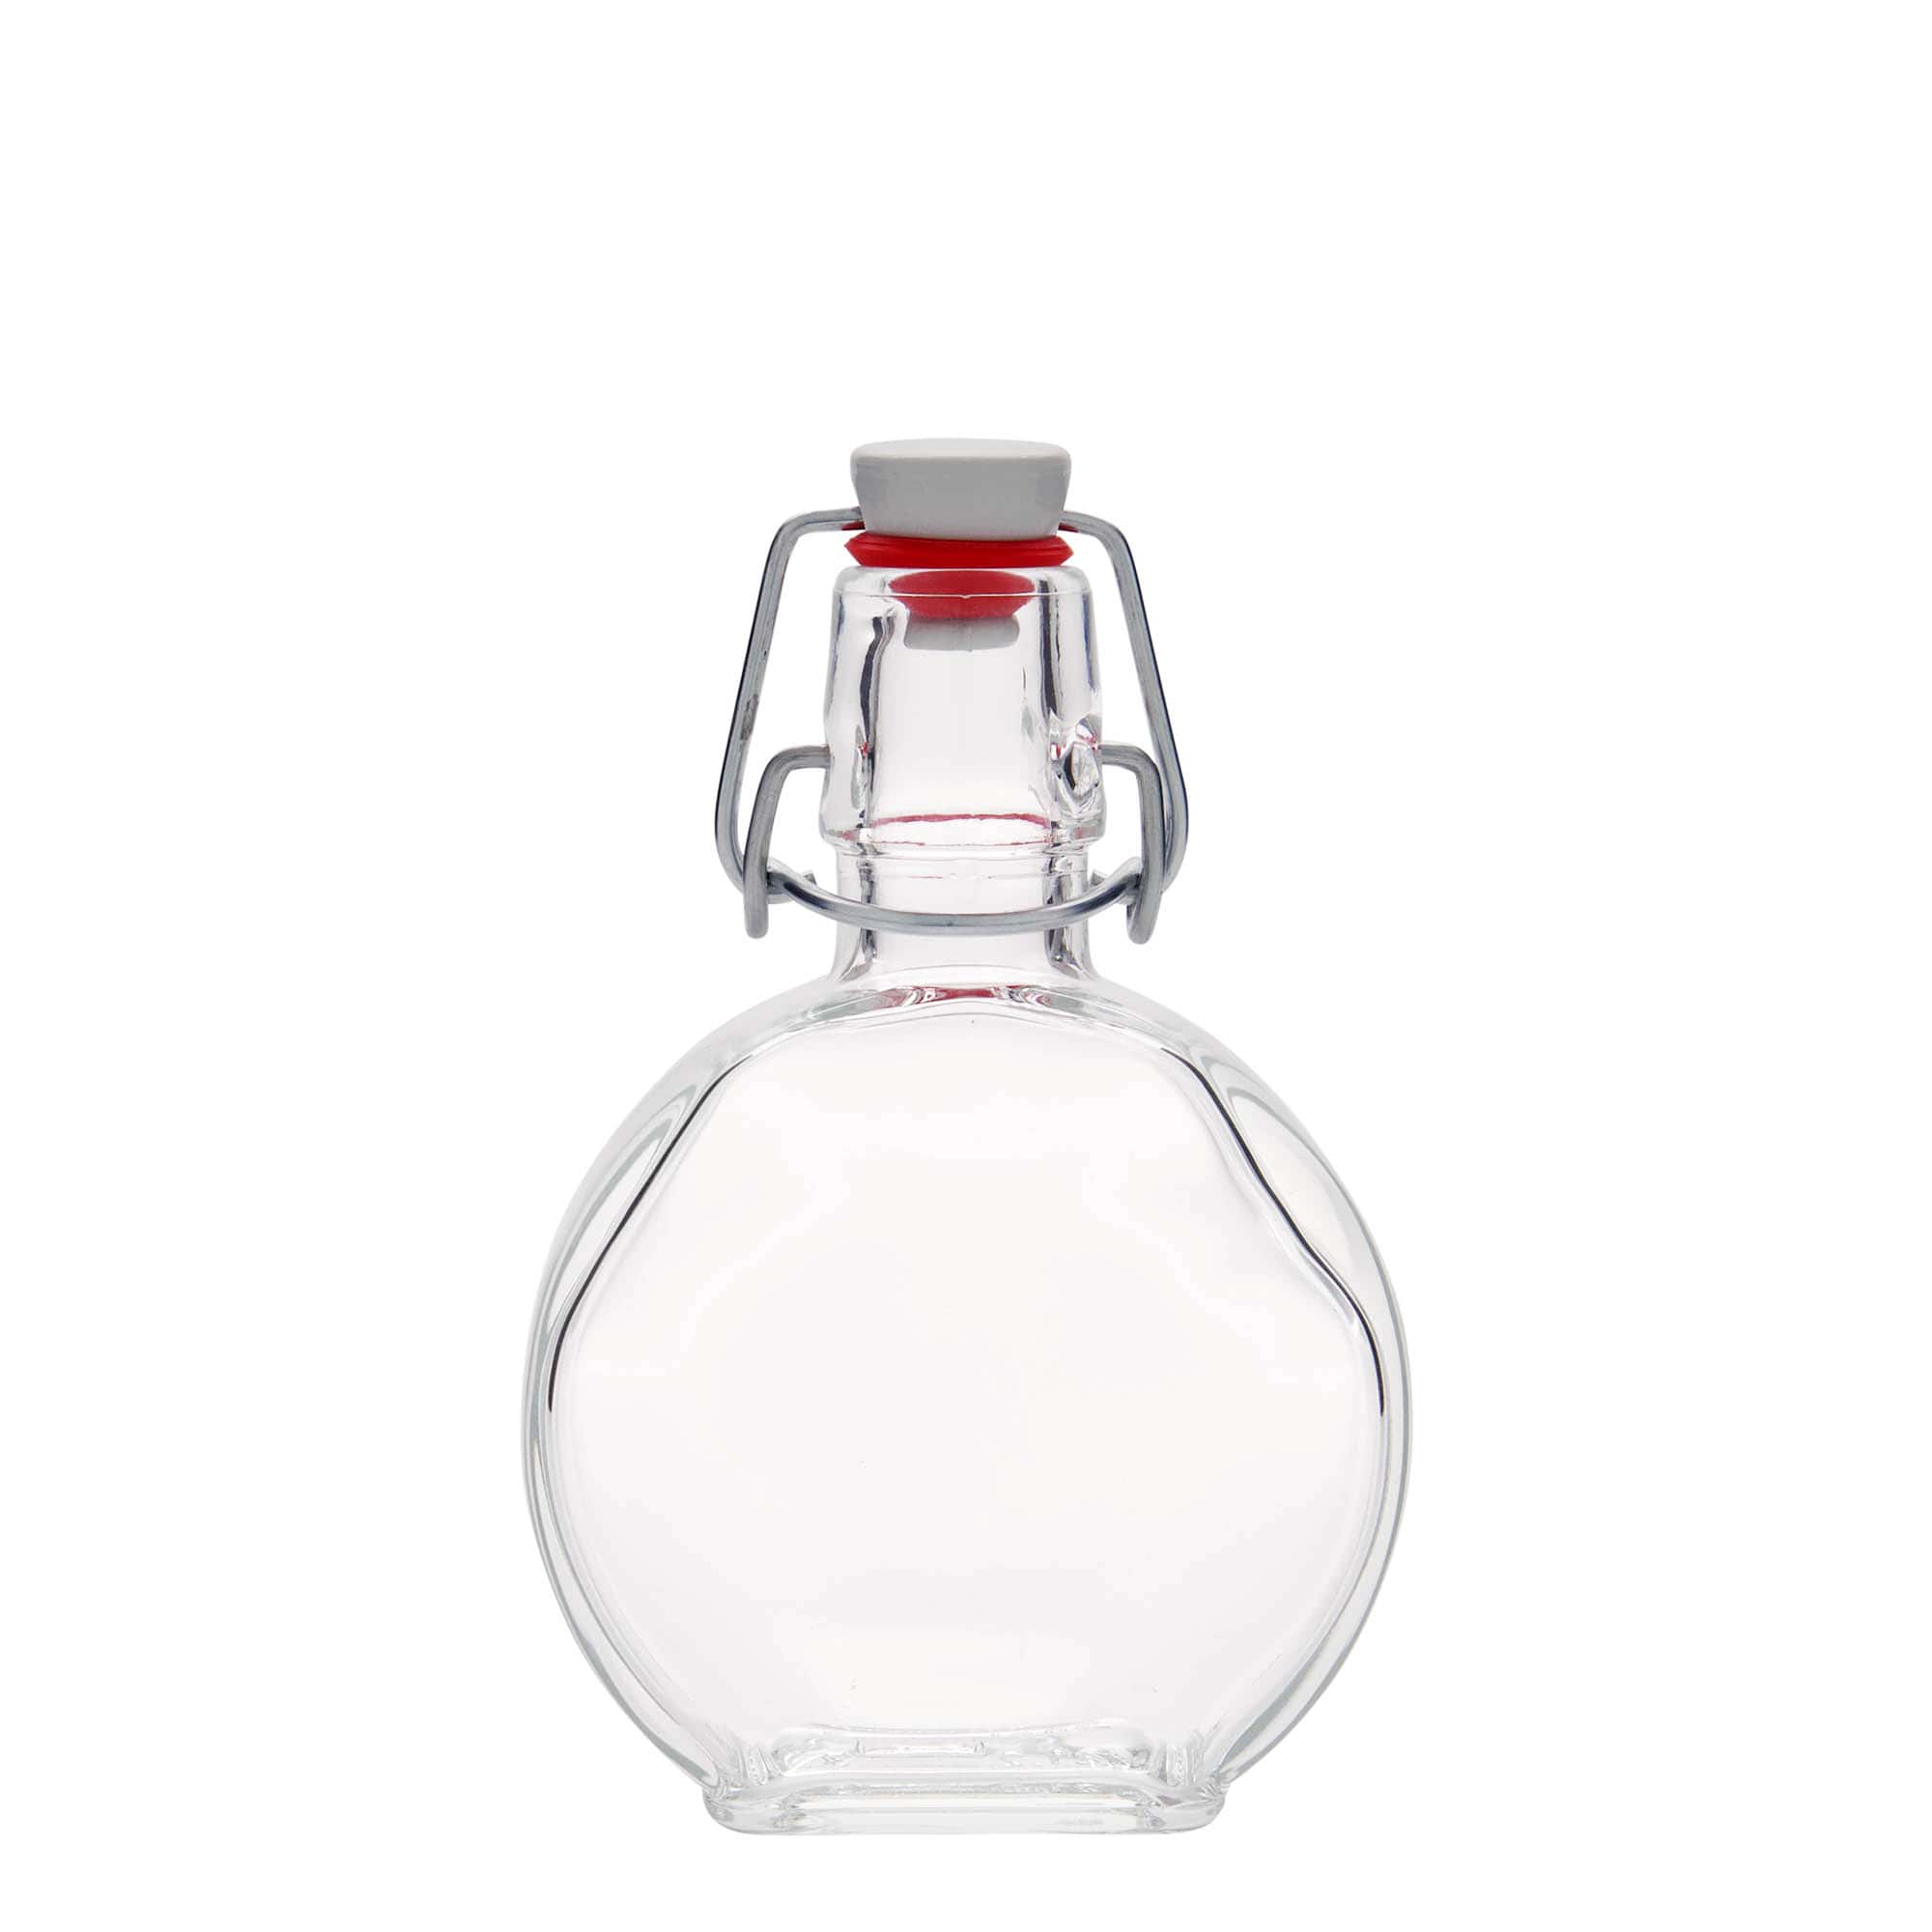 200 ml glasflaske 'Sensatione', firkantet, åbning: Patentlåg